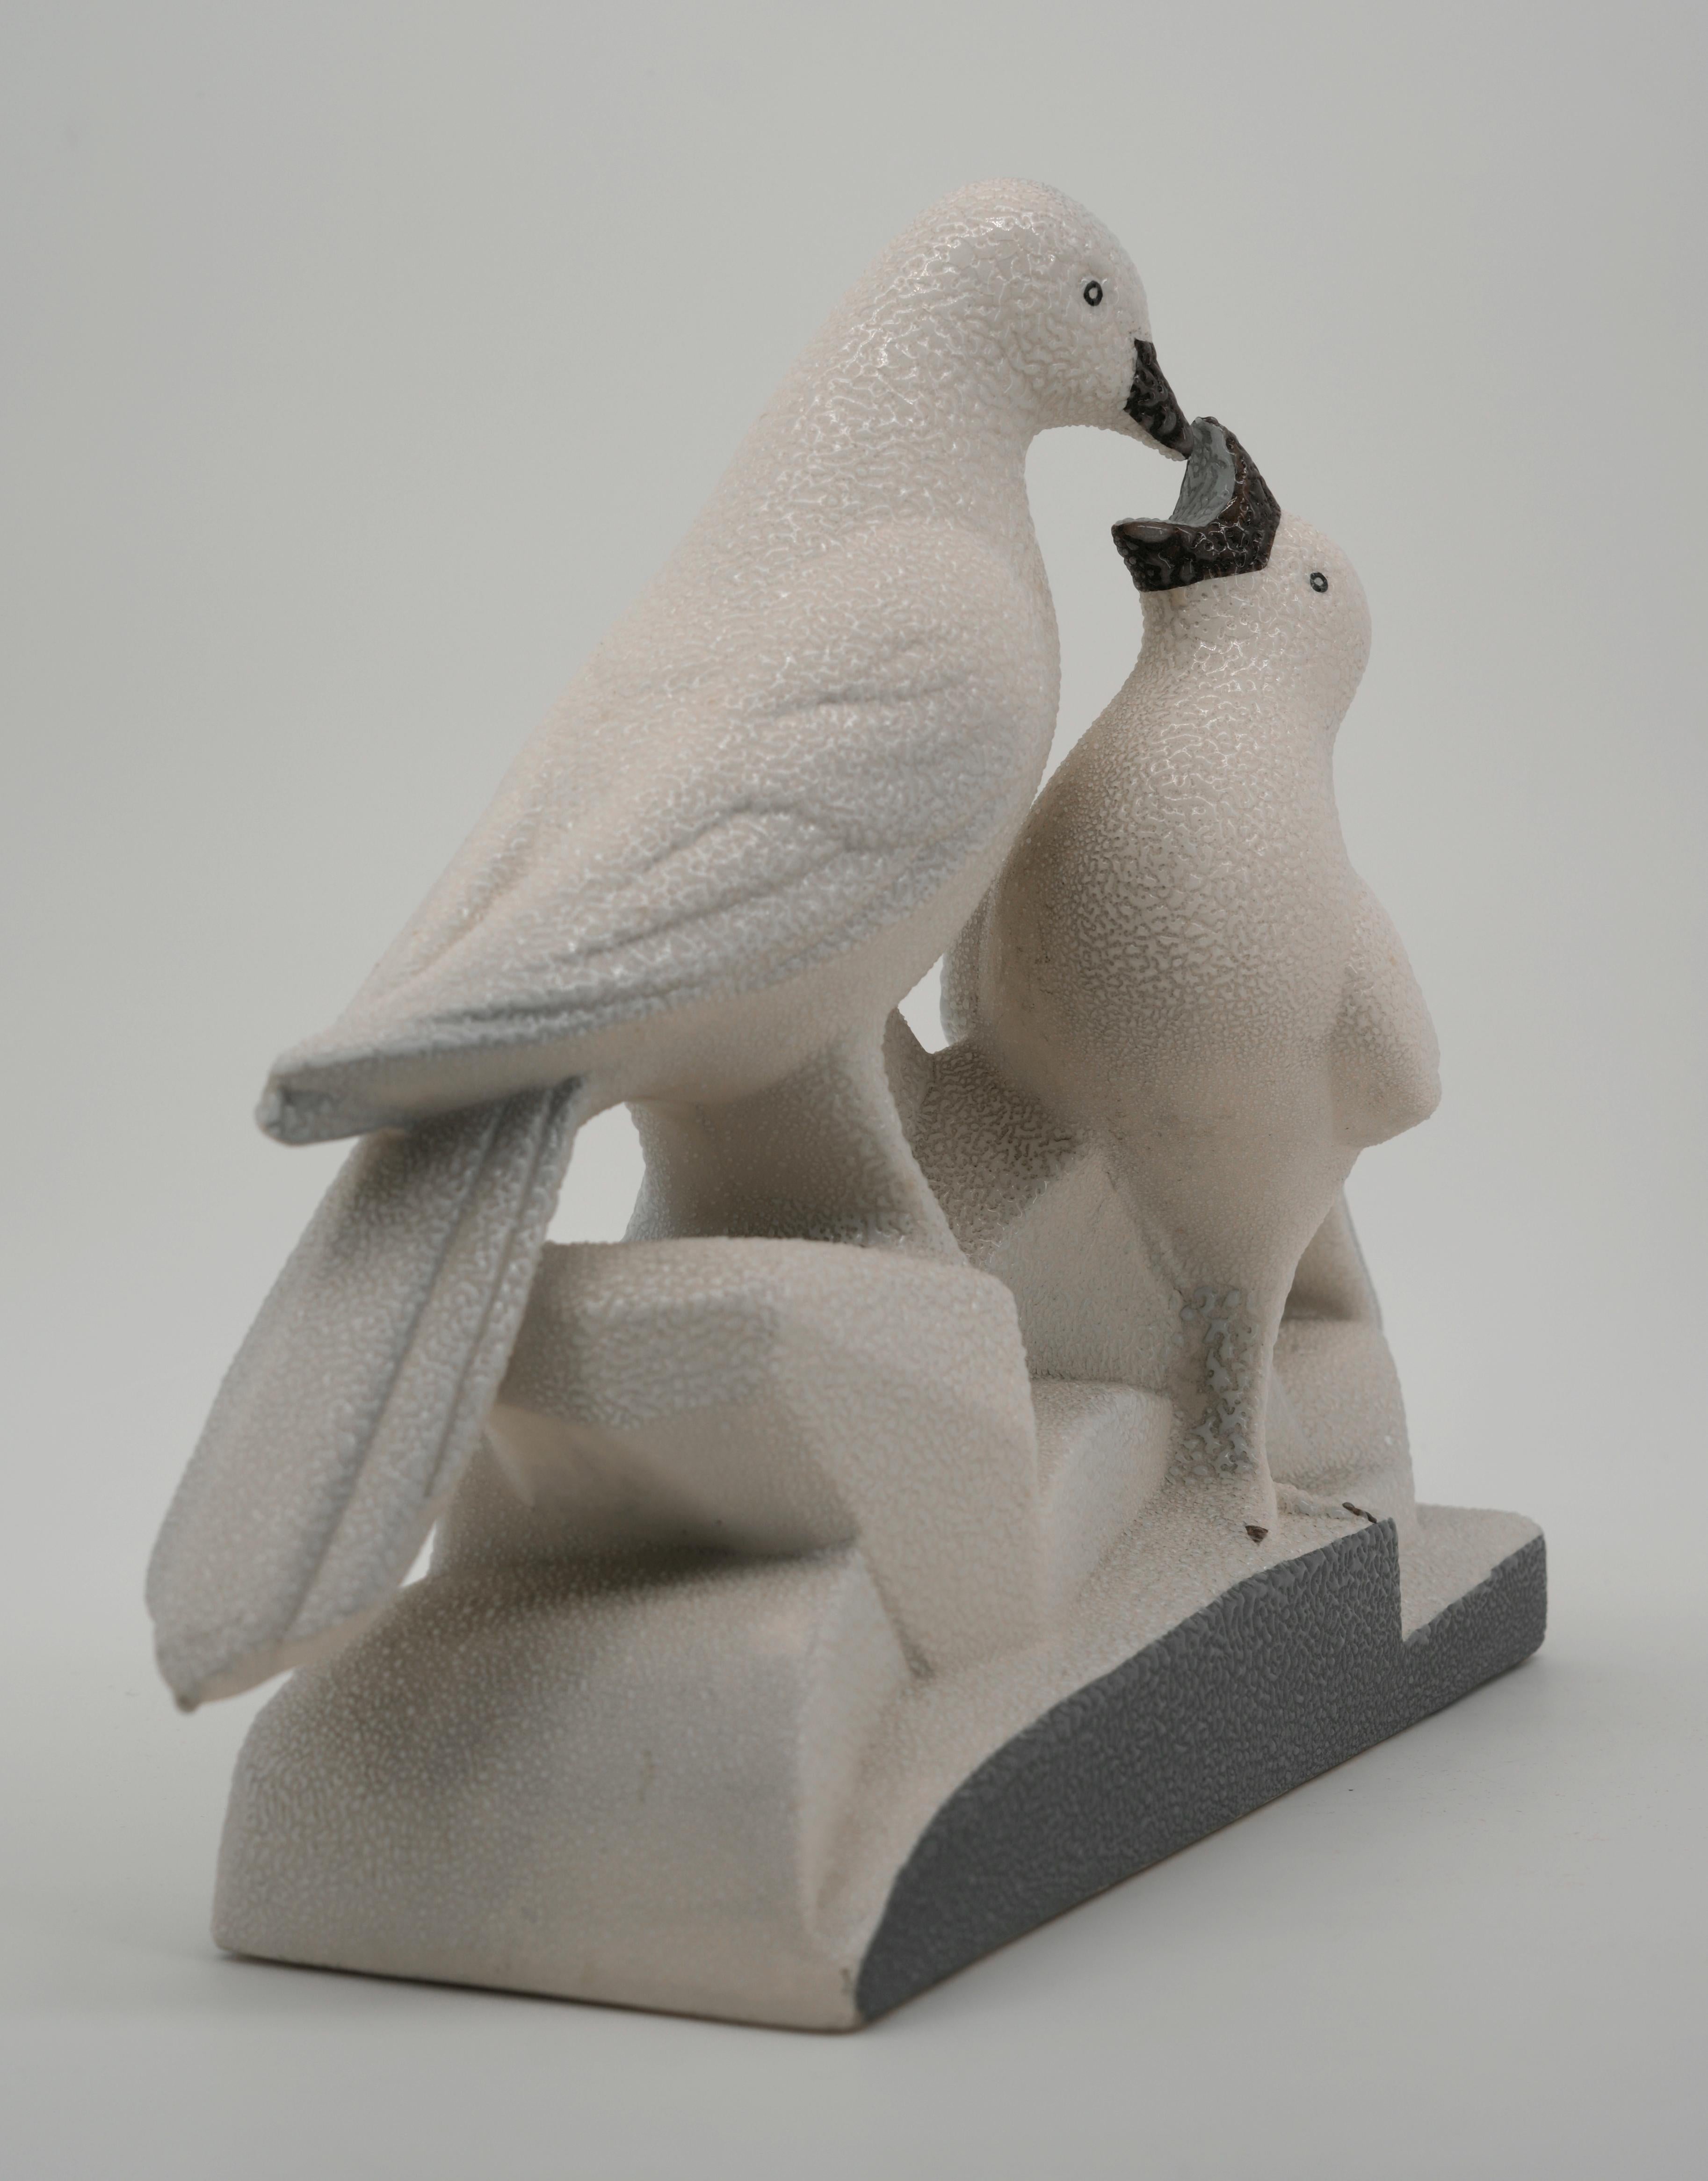 Französische Antilopenpaar-Skulptur im Art déco-Stil von Charles LEMANCEAU in Sainte-Radegonde, Frankreich, 1930. Abgebildet im Katalog von Sainte-Radegonde, Seite 8 (siehe Foto). Maße: Breite: 19.1